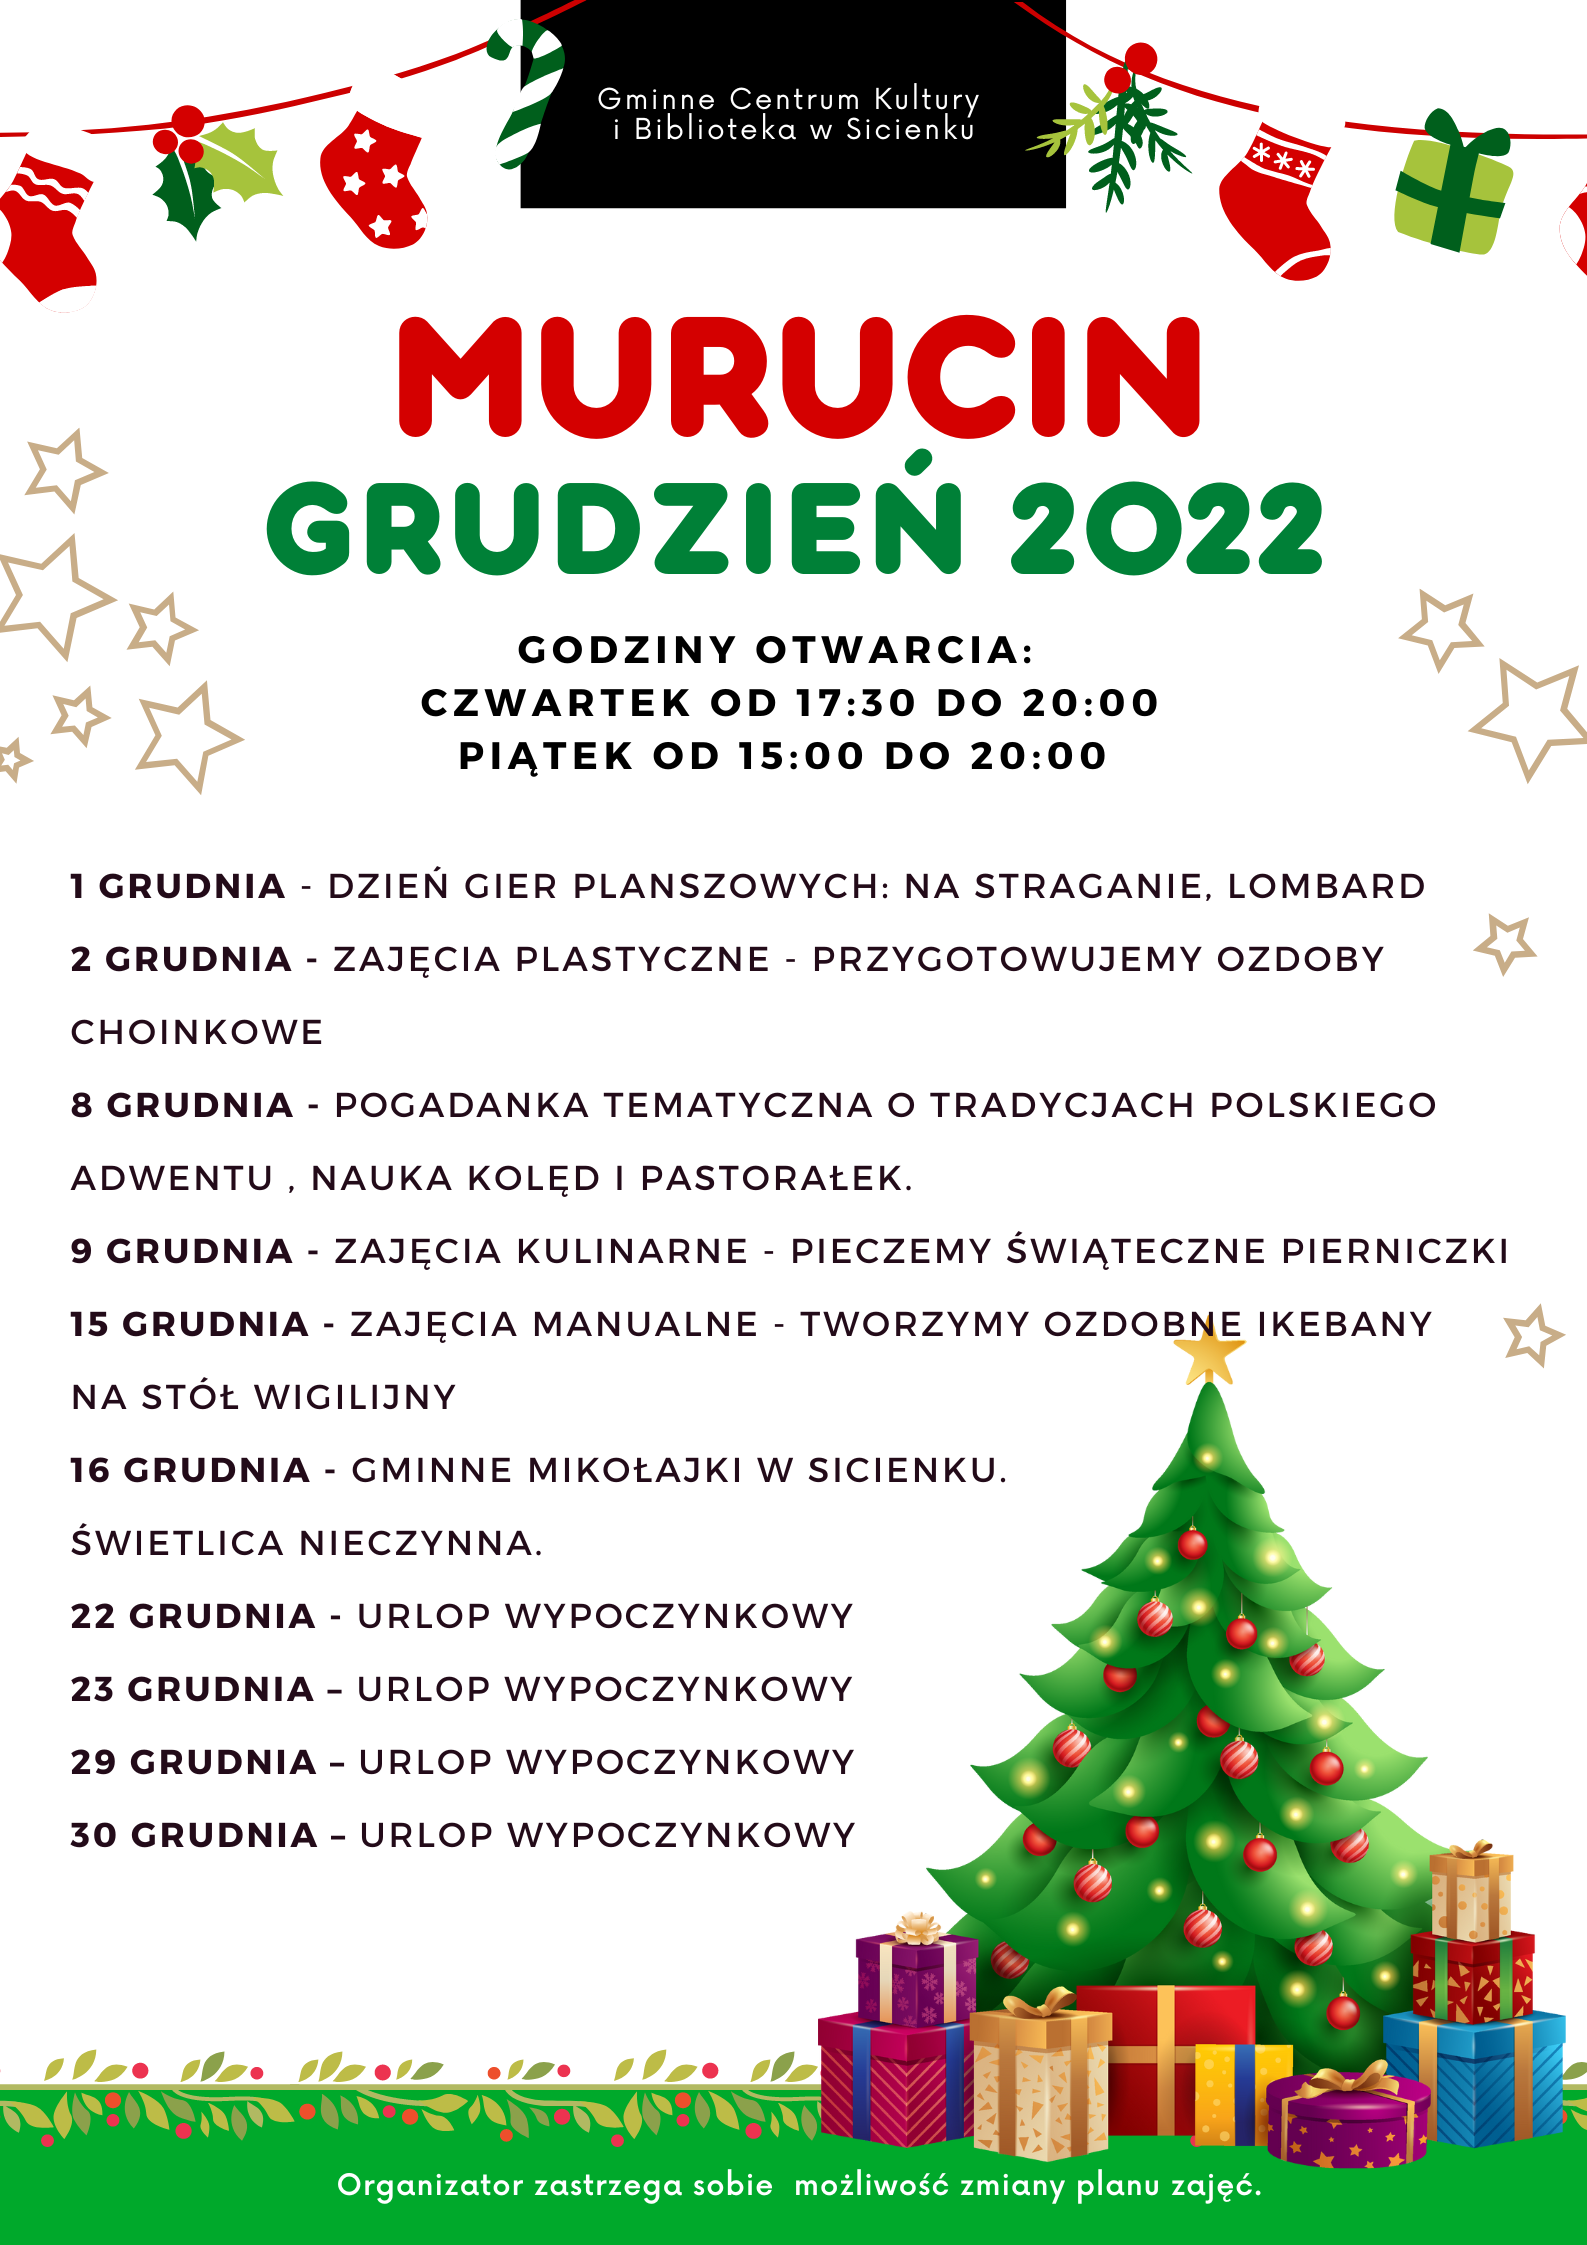 Plan pracy - grudzień 2022 Murucin